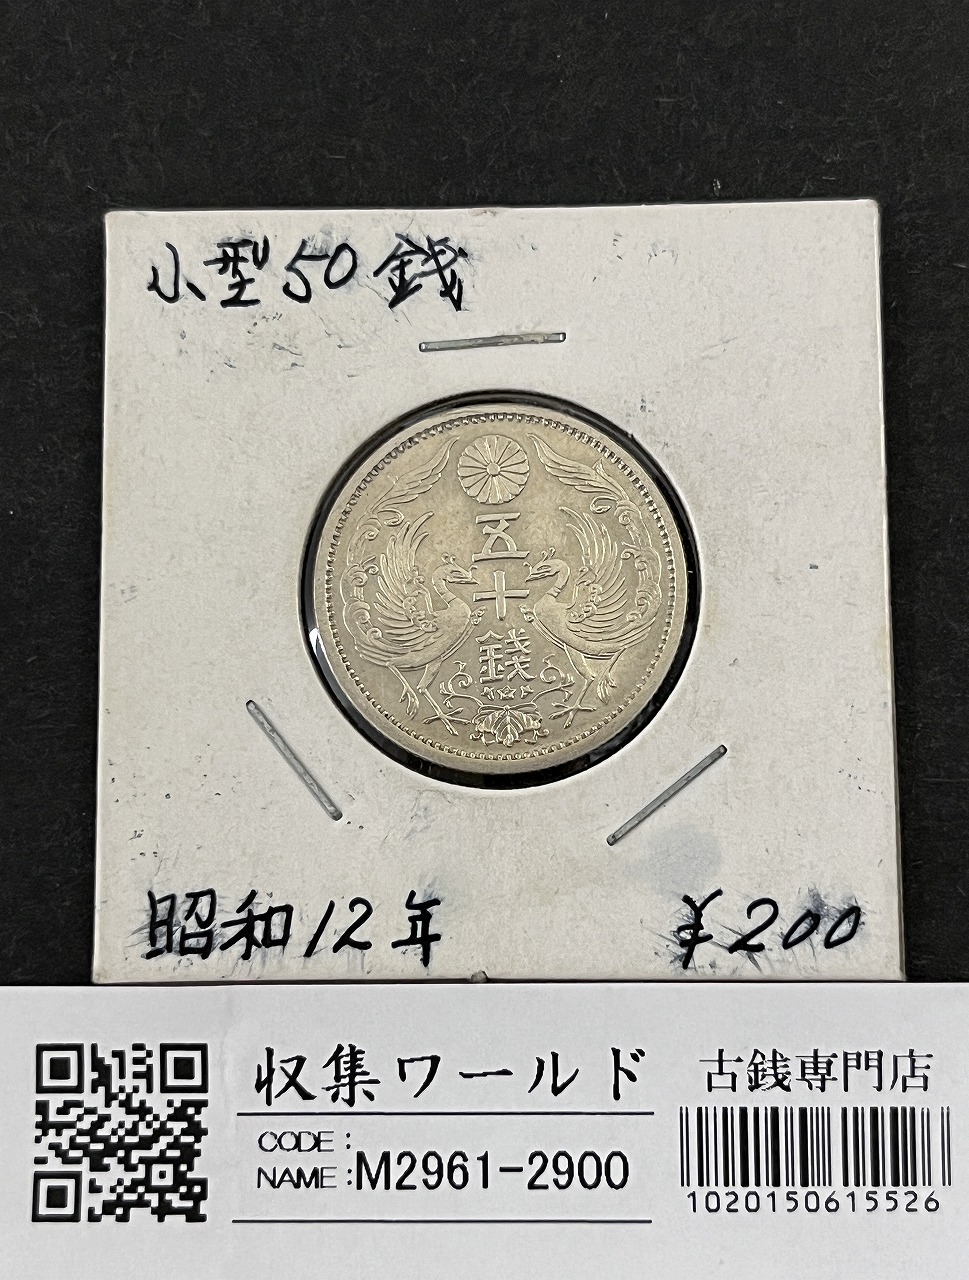 鳳凰 50銭銀貨 昭和12年銘(1937年) 近代銀貨 小型 50銭 美品